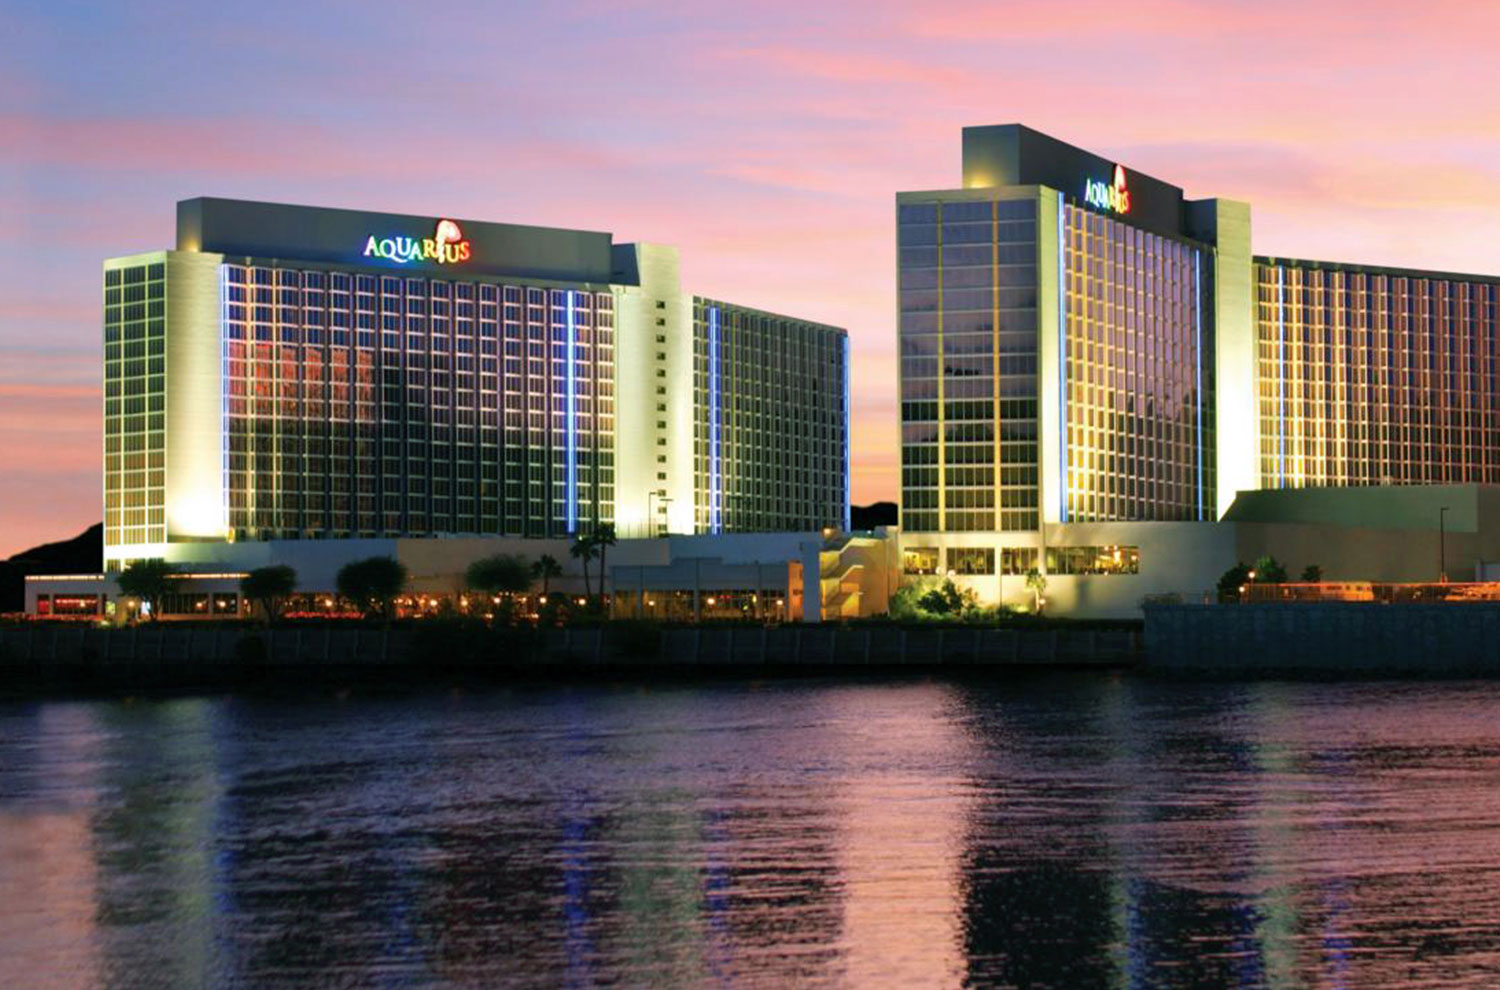 Image of Exterior view of Aquarius casino resort